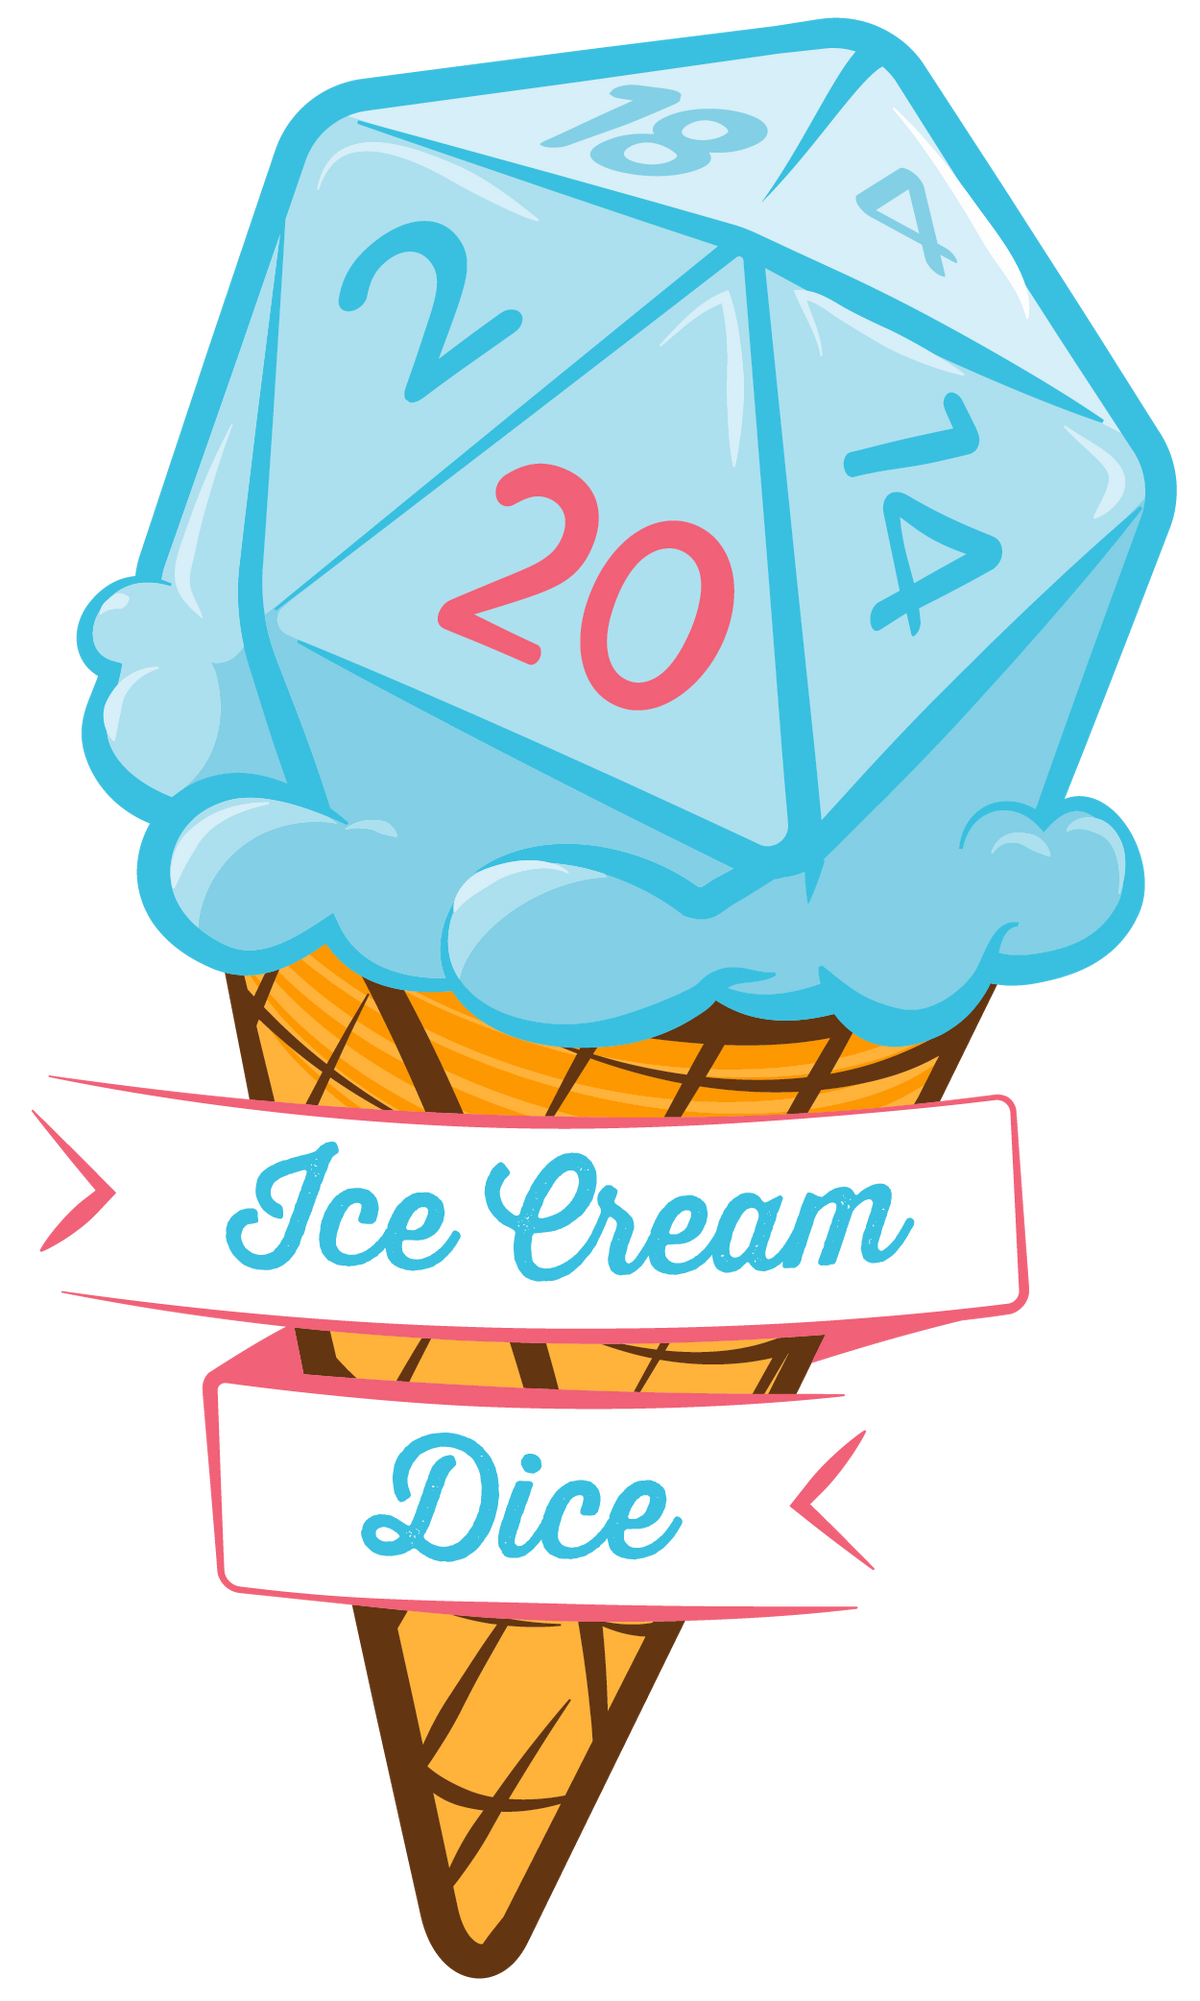 Ice Cream Dice